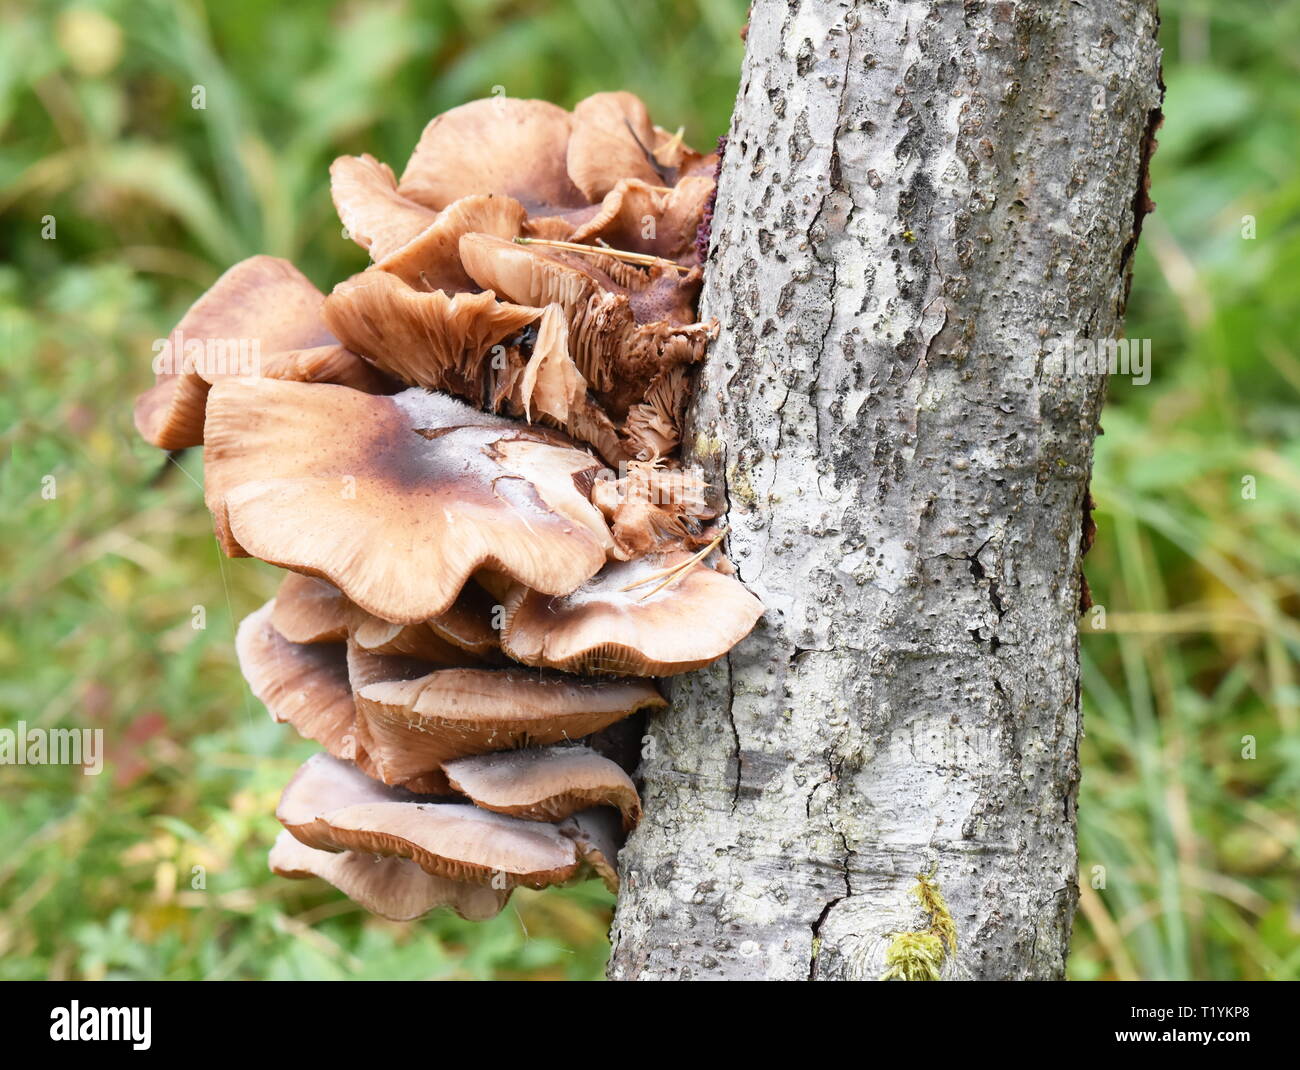 Große Gruppe von Honig, Armillaria Mellea Pilze wachsen auf einem Baum Stamm Stockfoto